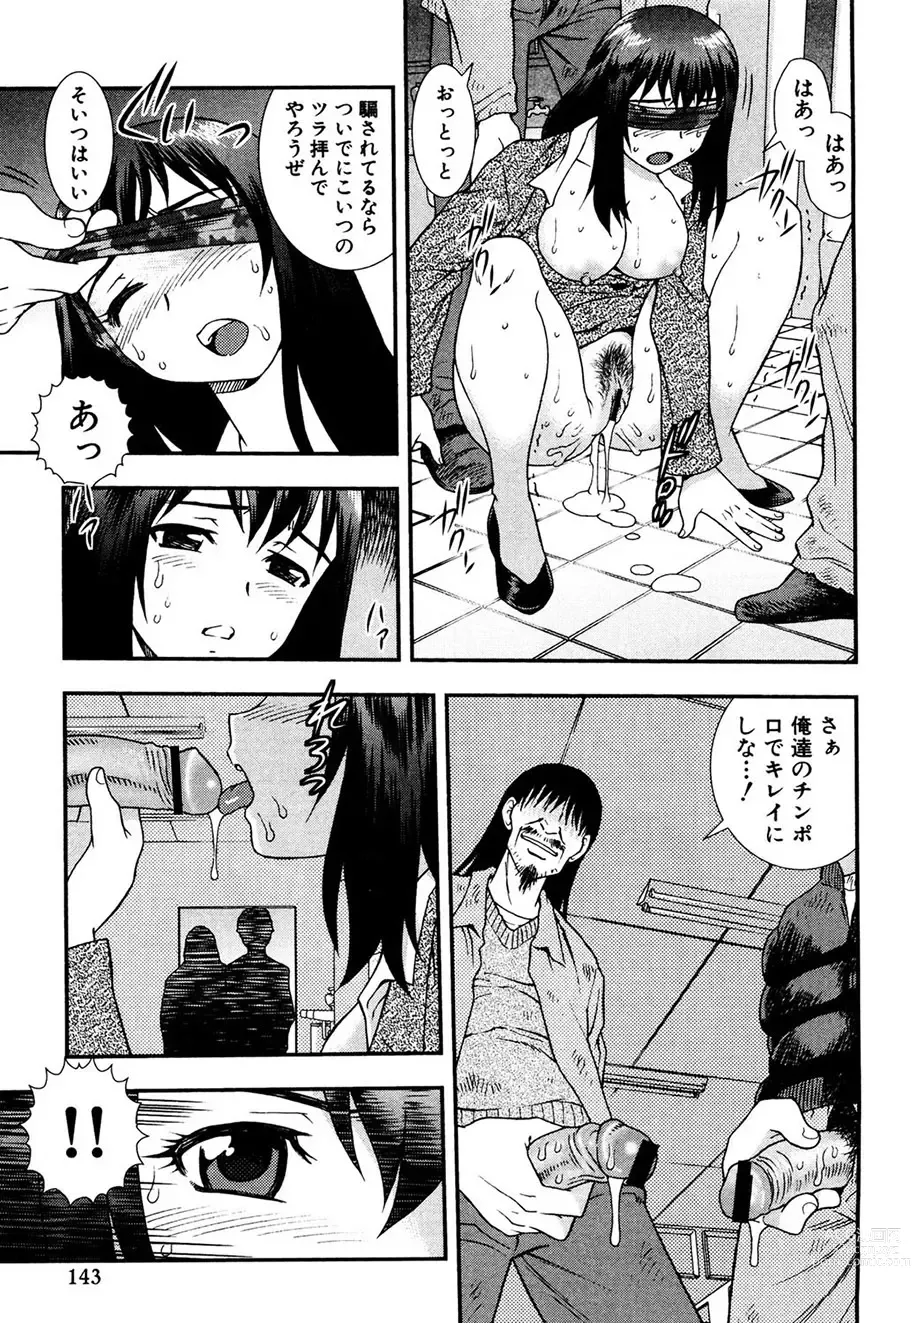 Page 142 of manga Onna Kyoushi Chijoku no Kusari -NIGHTMARE-